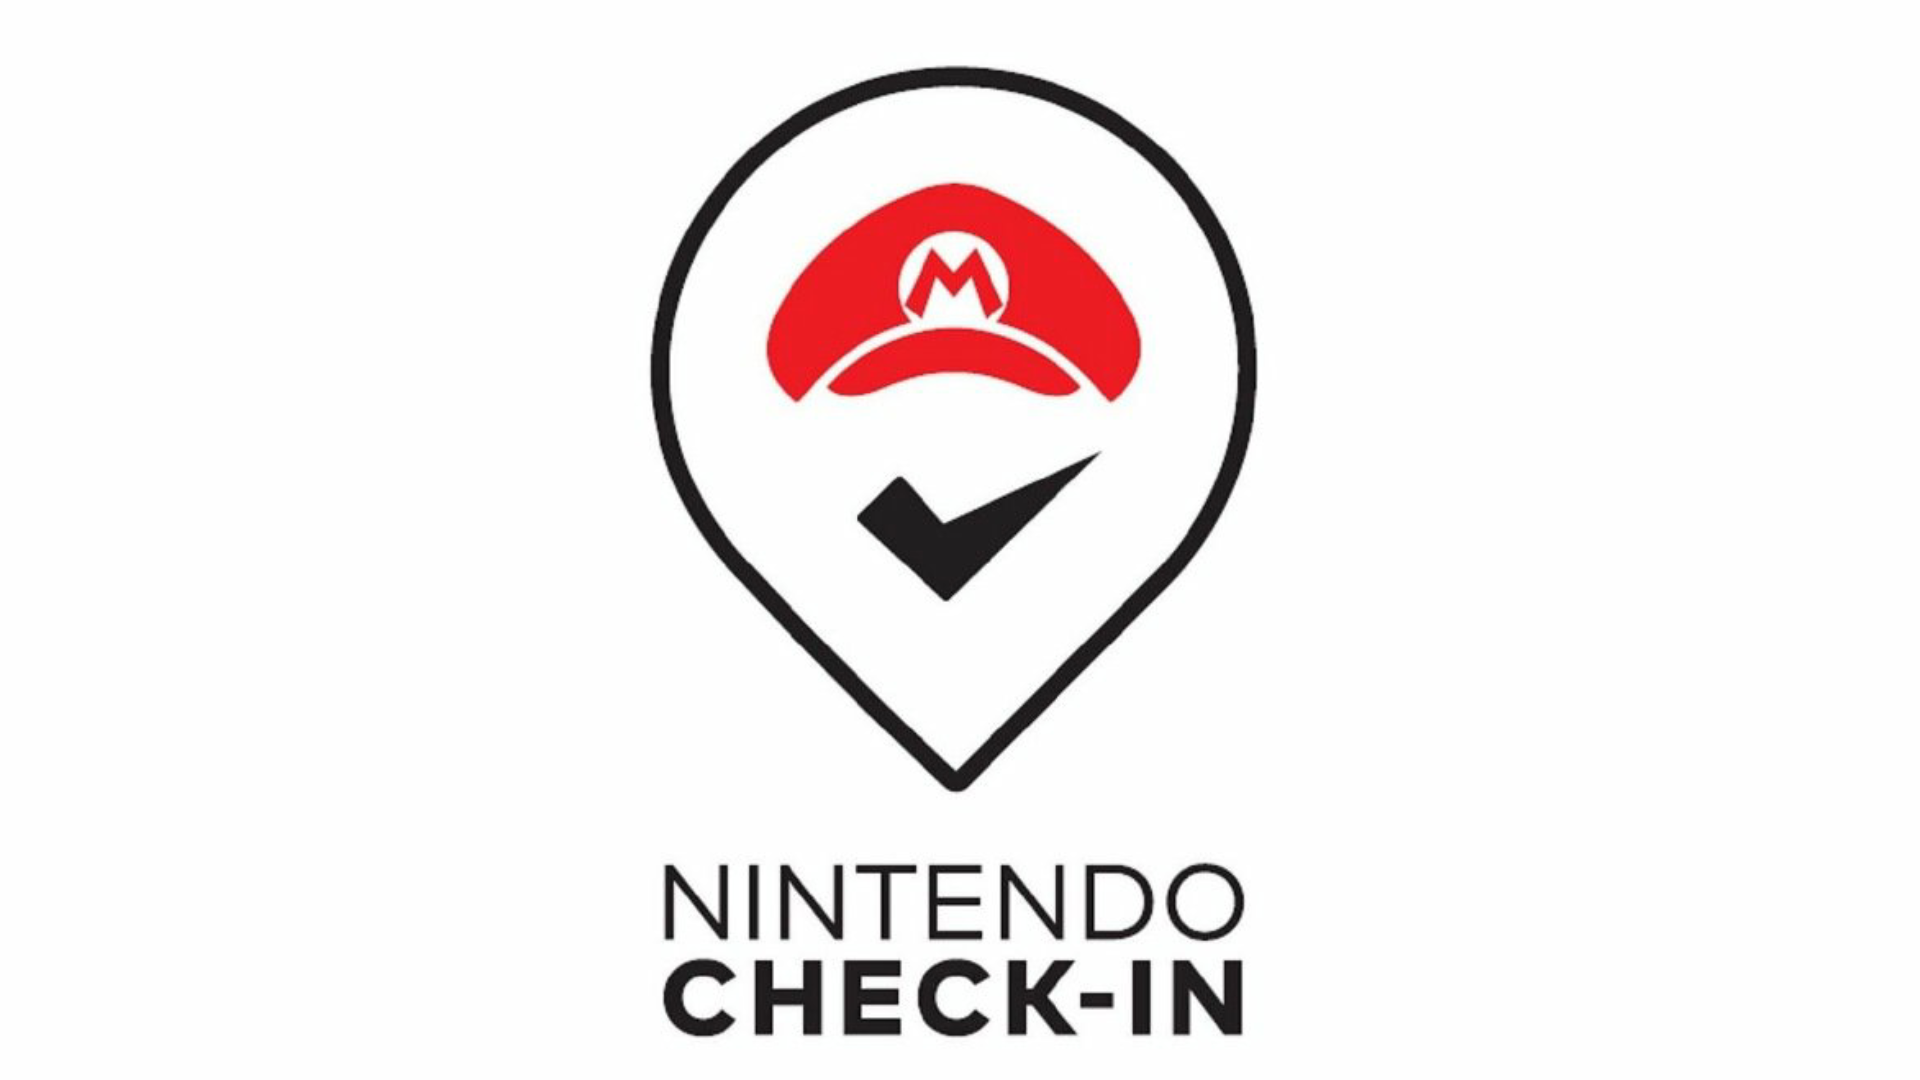 Nintendo registra la marca “Nintendo Check-In” con fines bastante interesantes